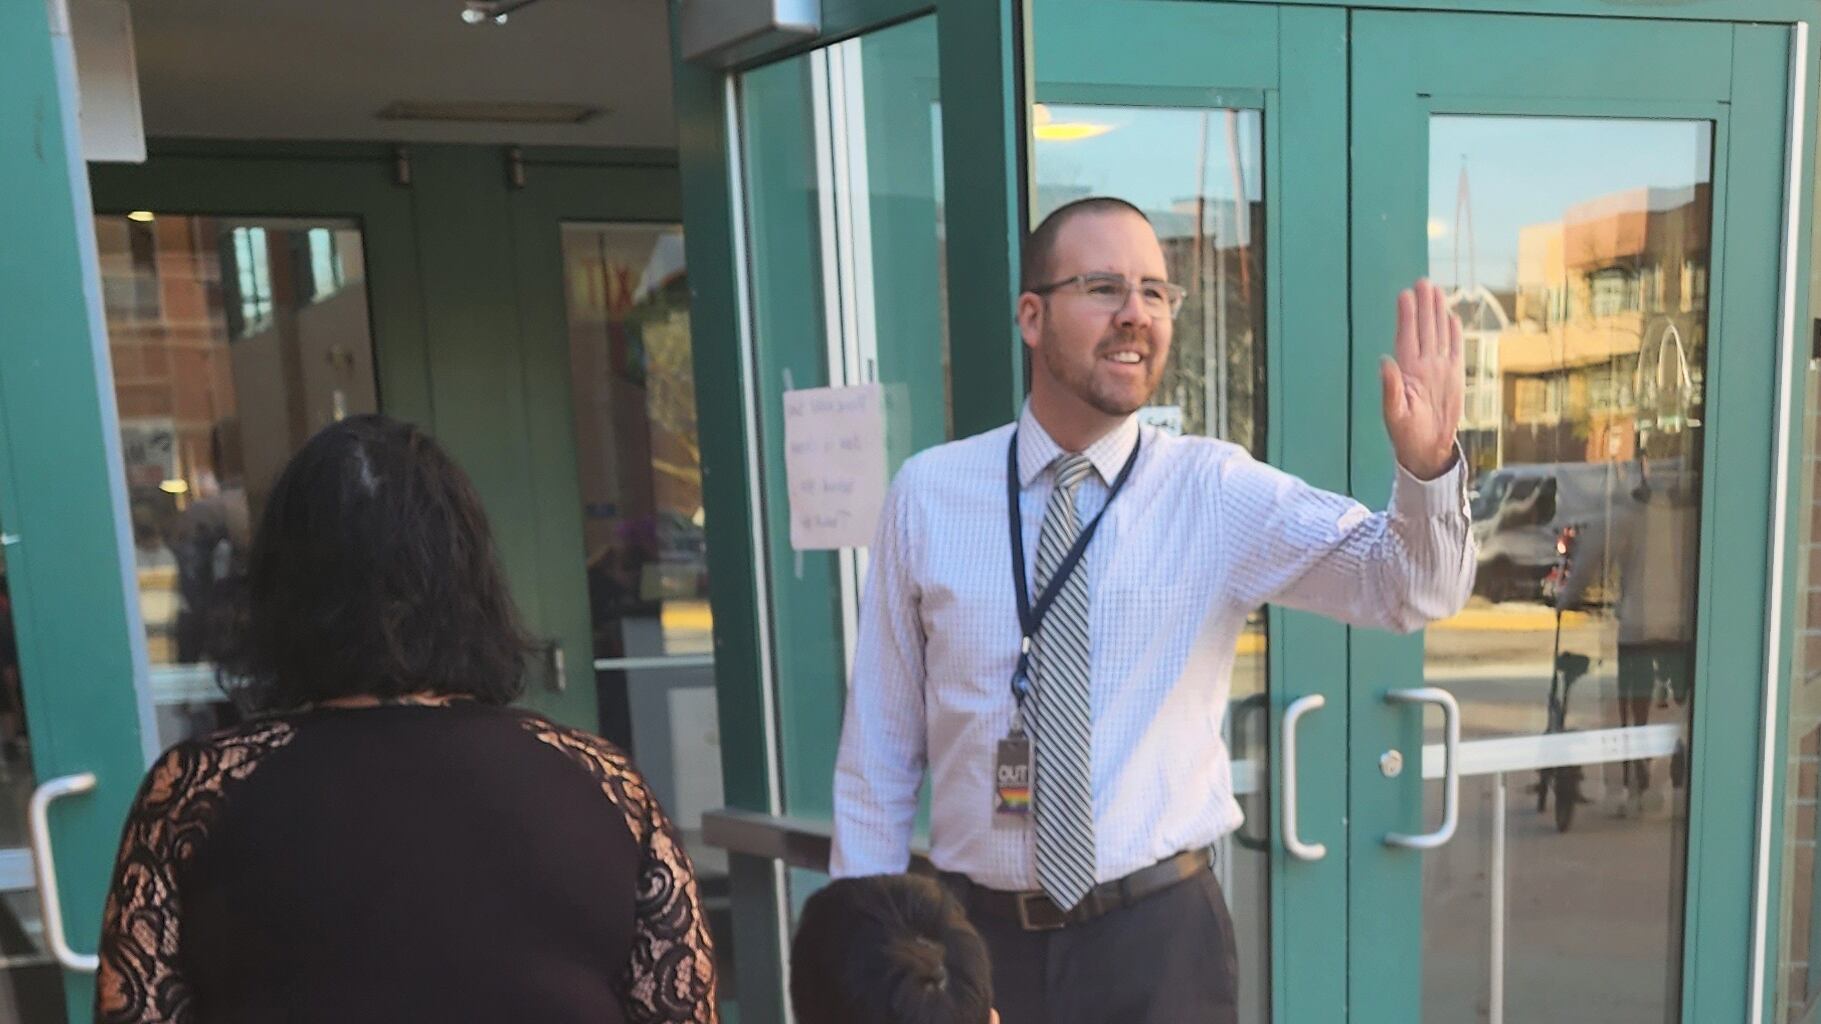 Man waves in front of open door at a Chicago school